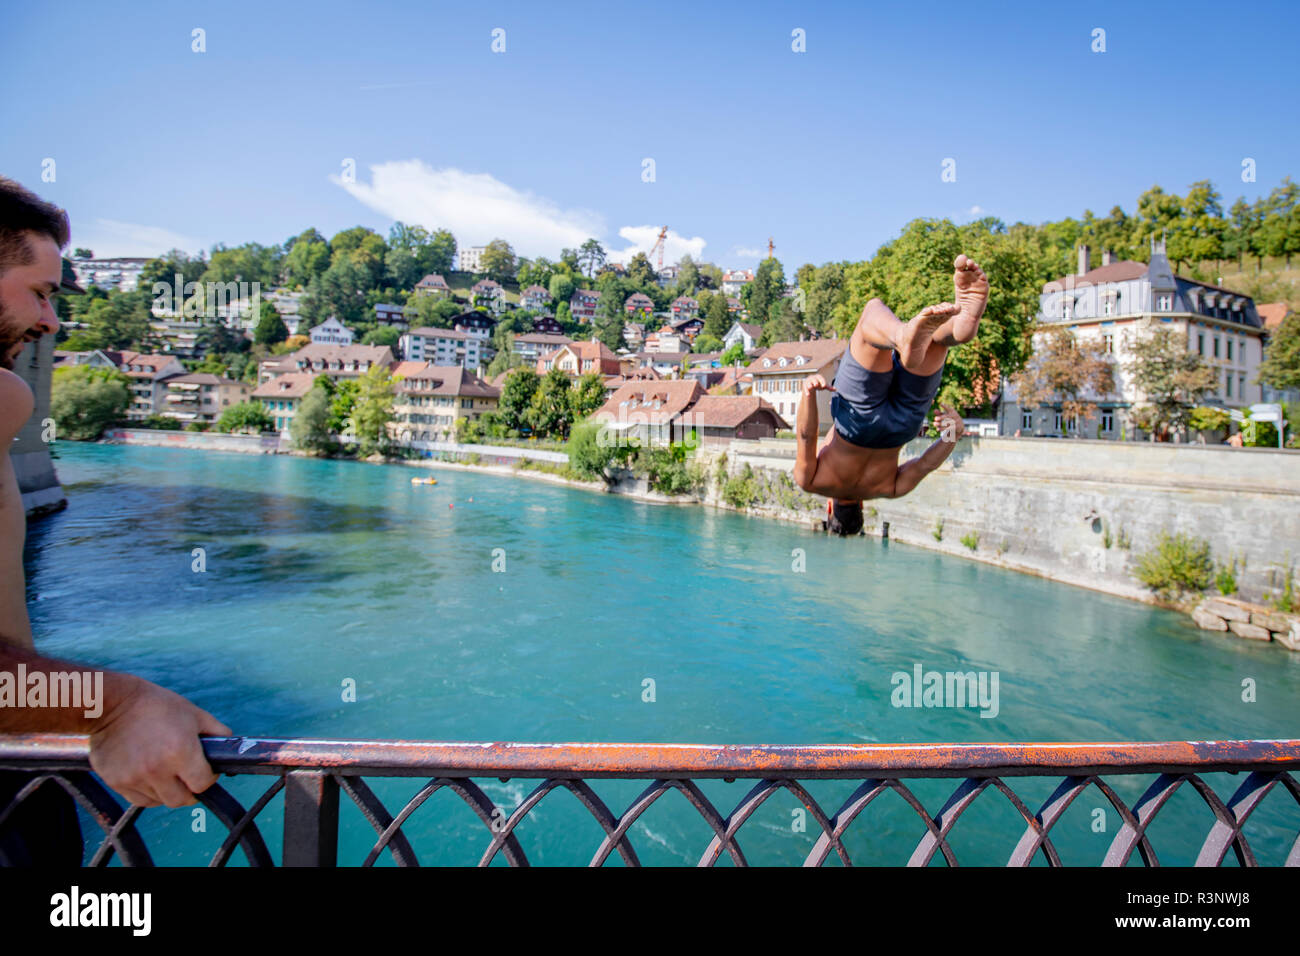 Ein Mann springt in einem Rückwärtssalto vom Untertor Brucke in Bern. Die Aare schwebt direkt durch die Schweizer Hauptstadt Bern, und sobald die Temperatur über 10 Grad kriecht, sieht man, wie die Menschen zum Schwimmen ins Wasser springen. Viele nutzen den Fluss regelmäßig, um zum Mittagessen oder zur Arbeit zu schwimmen. Einige schwimmen sogar das ganze Jahr über. Stockfoto